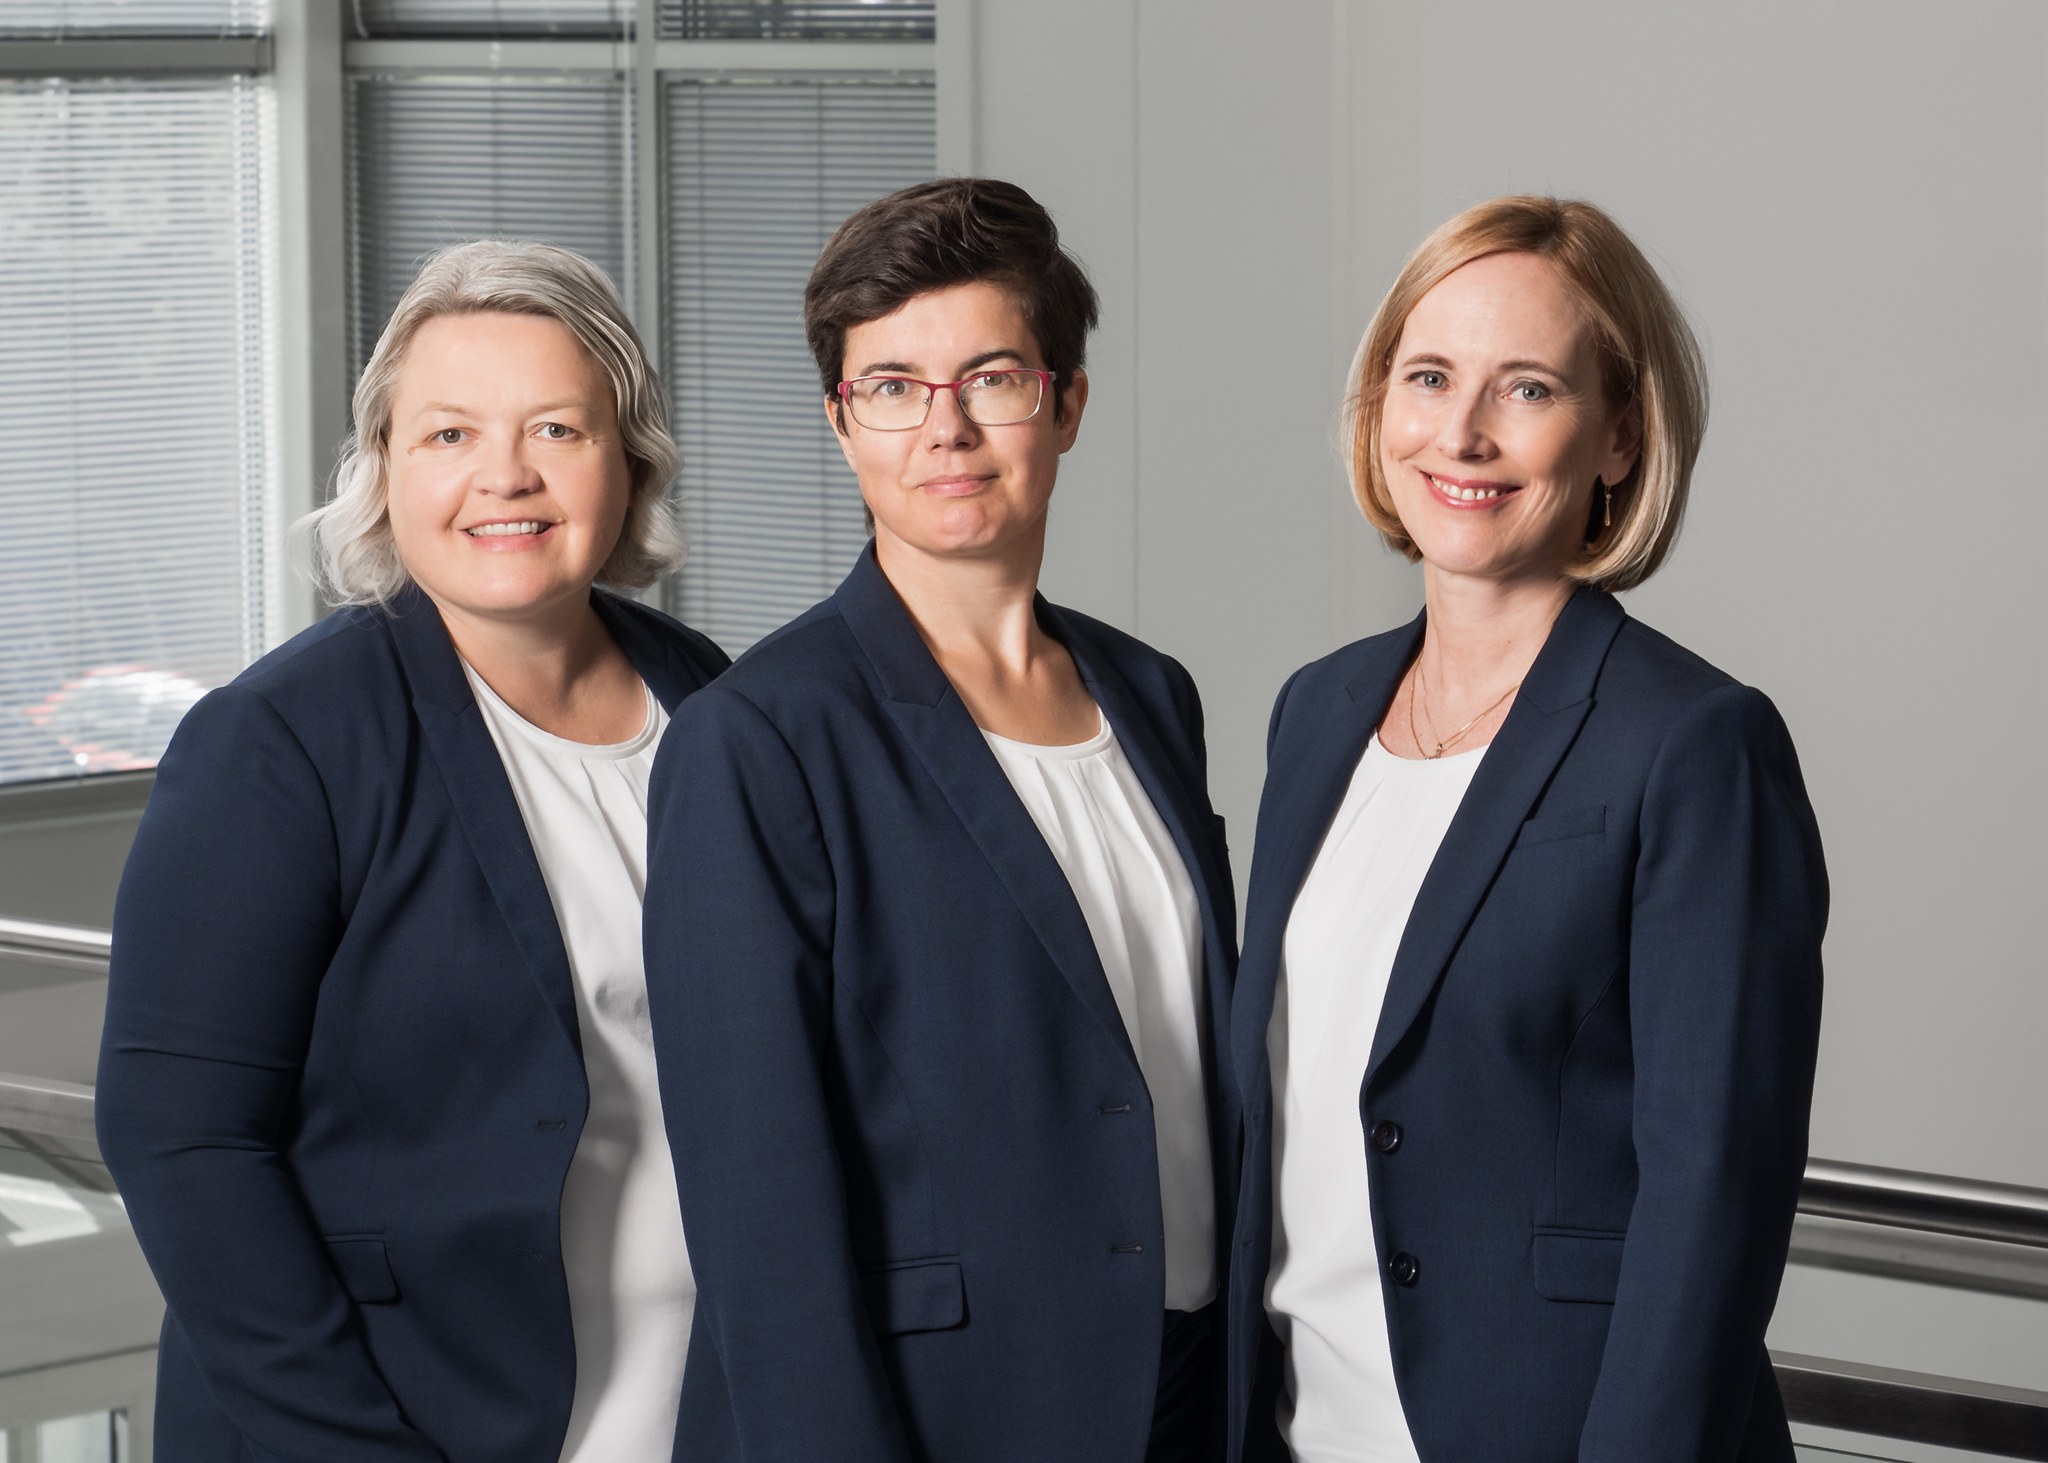 Kuva: Tasowheelin taloushallinnon tiimin esihenkilö Kirsi Ahonen (oikealla) sekä tiimiläiset Susanna Keski-Patola (vasemmalla) ja Anette Rantanen (keskellä).